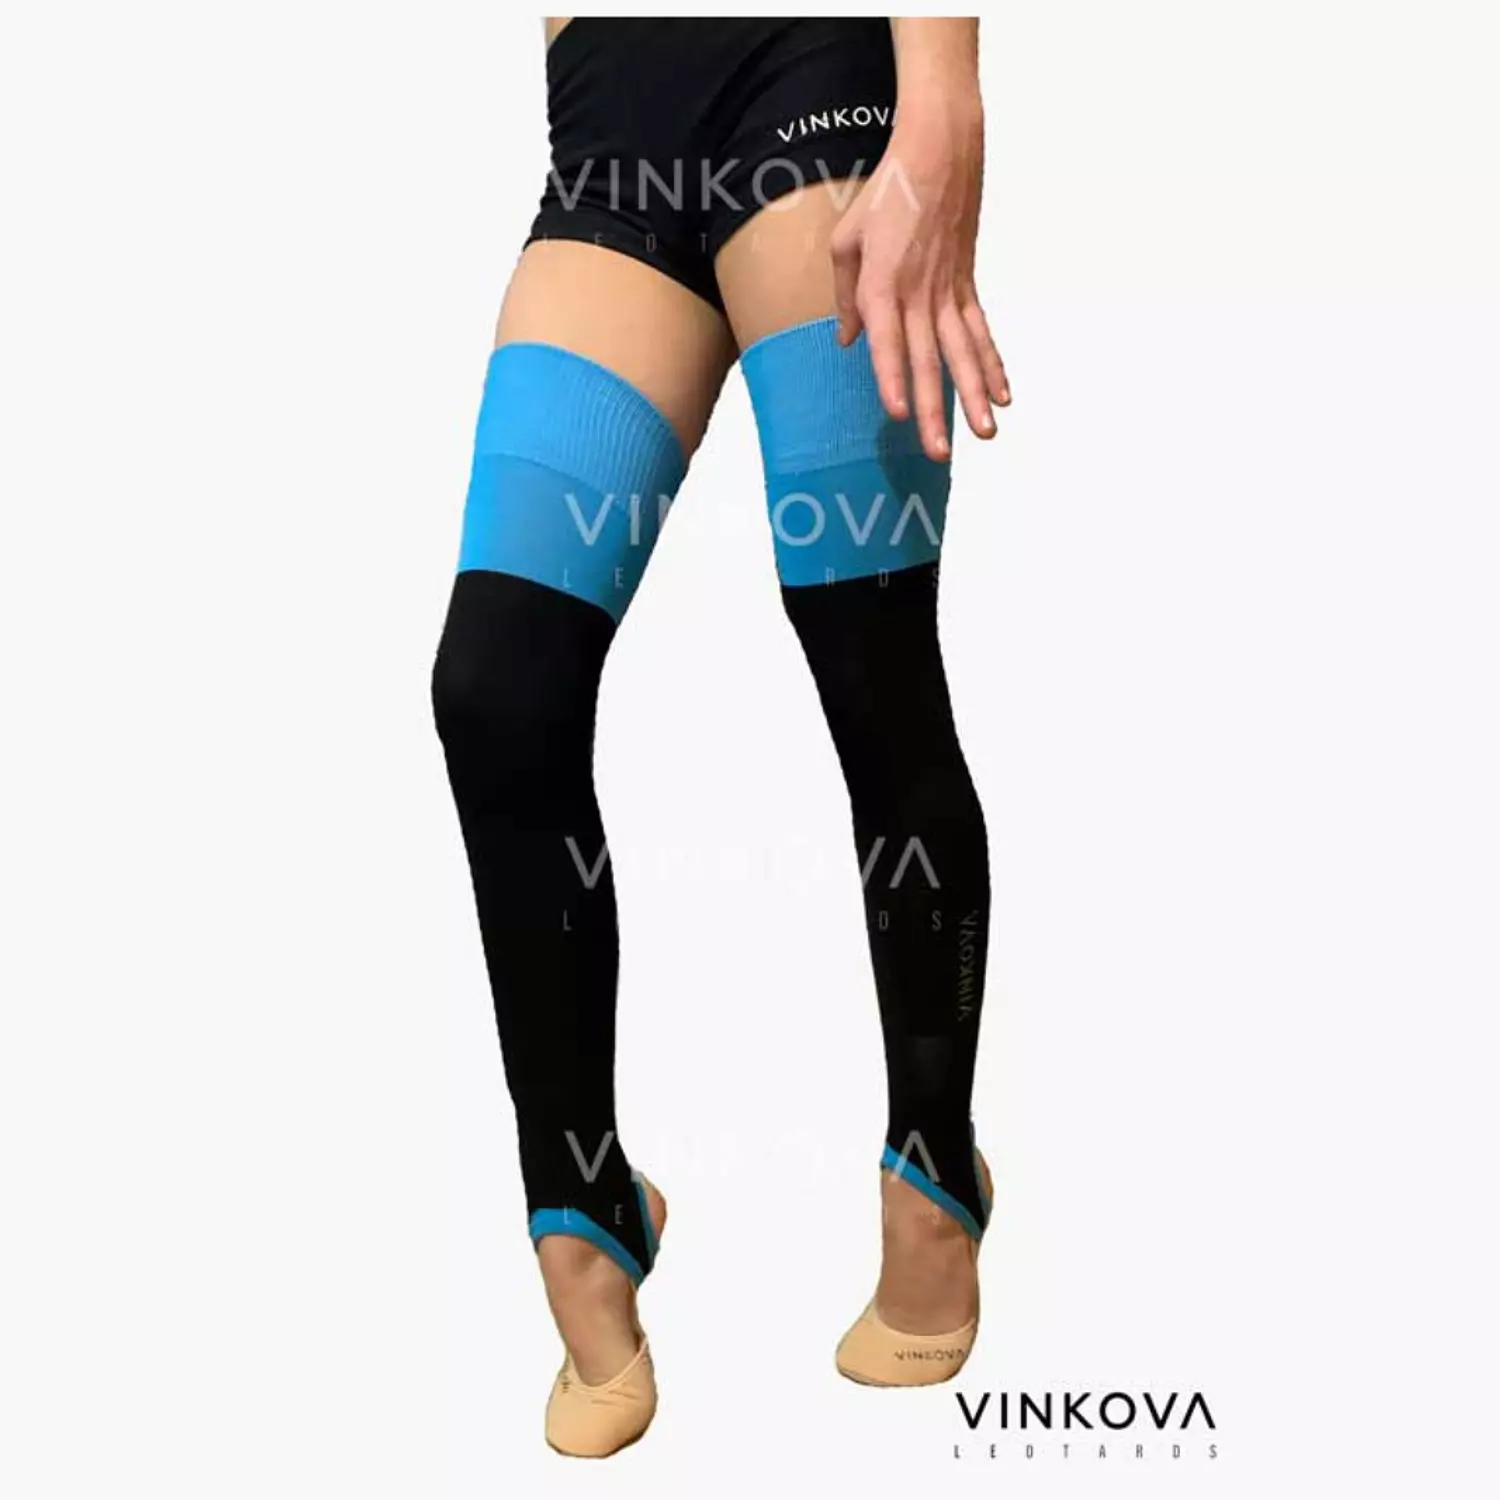 Vinkova-Leg Warmer Black Blue hover image